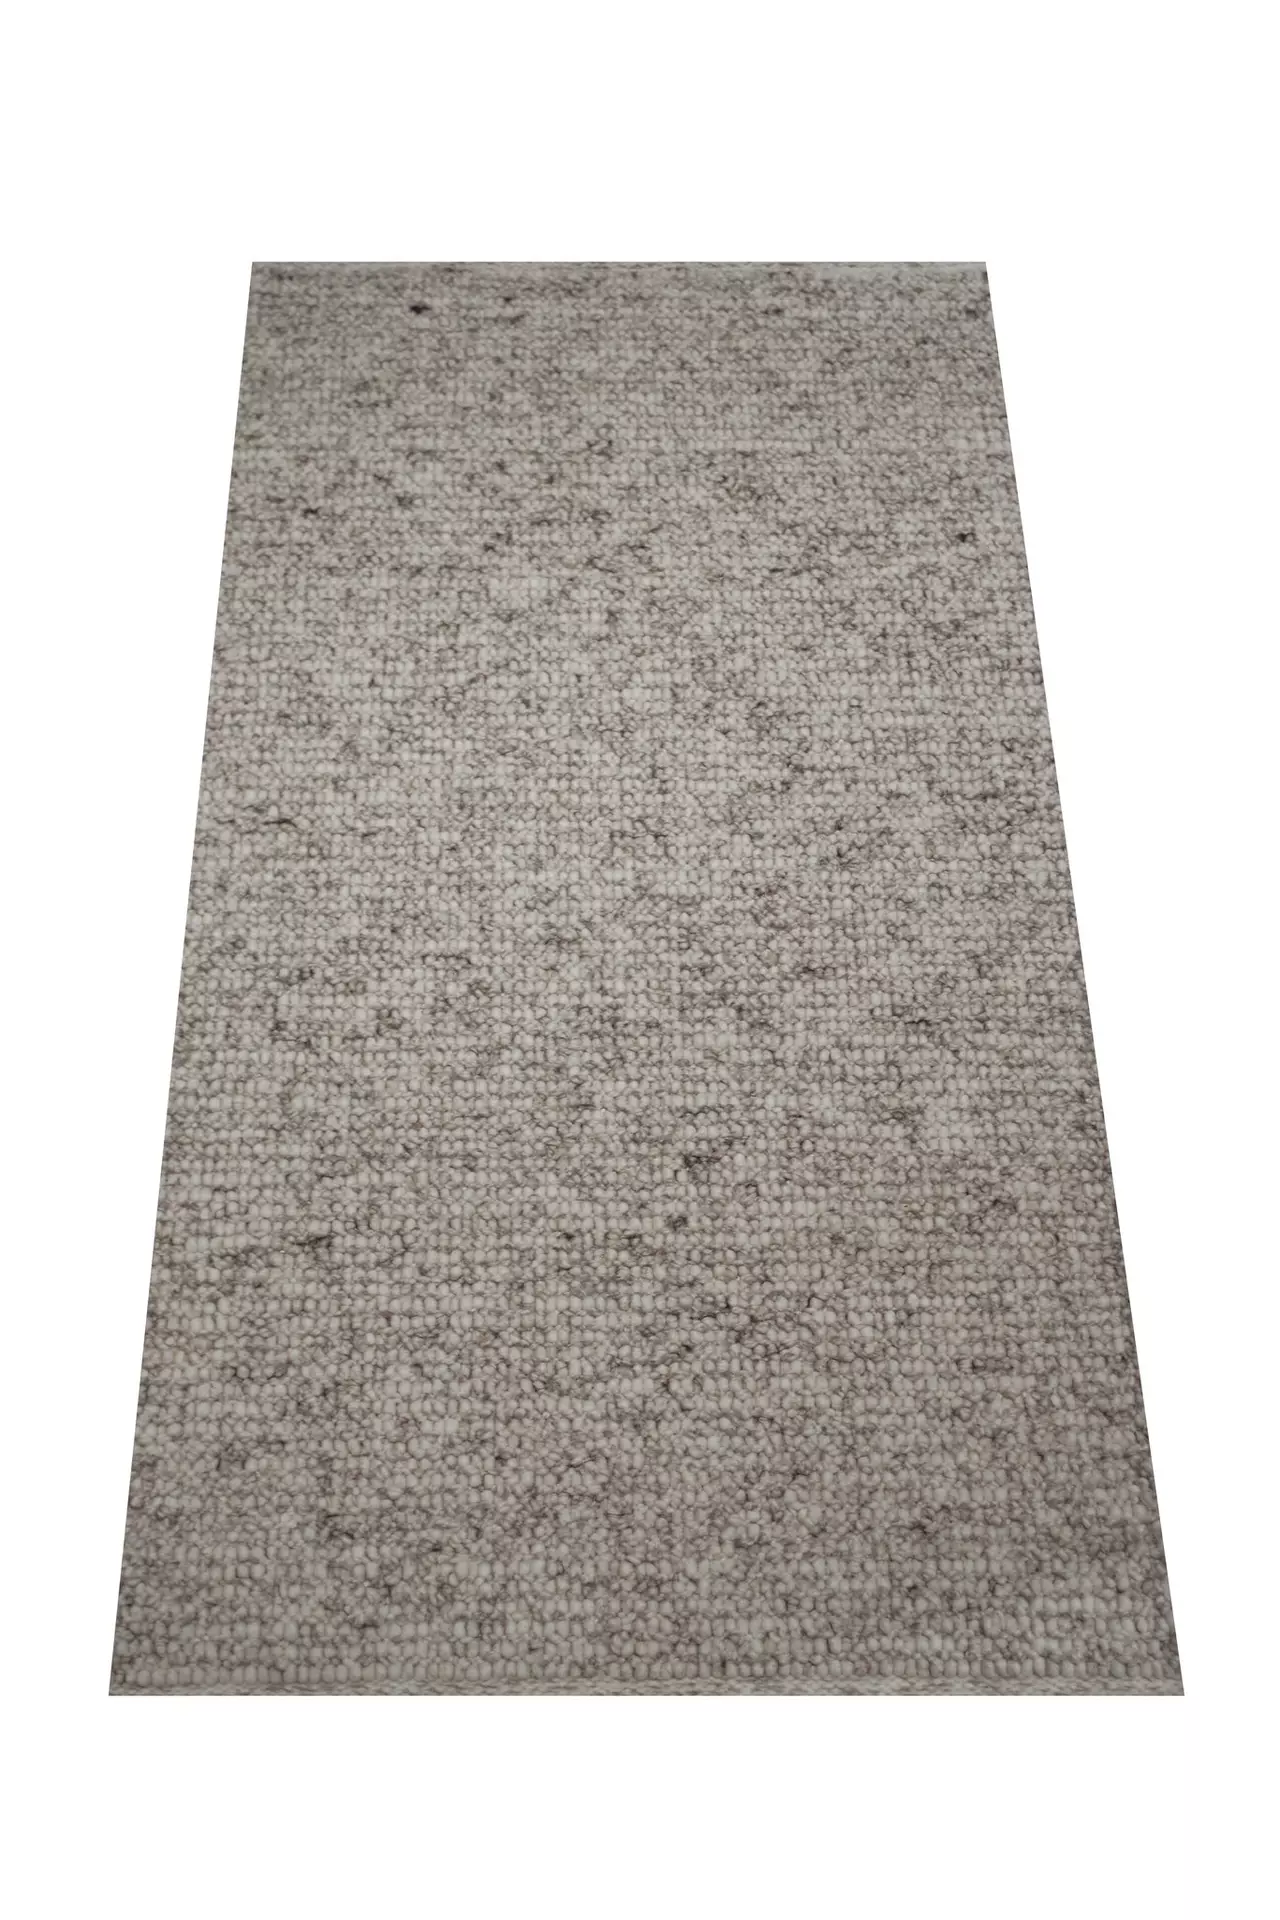 Handwebteppich Weitblick Polaris Allgäuer Teppichmanufaktur Textil 130 x 200 cm